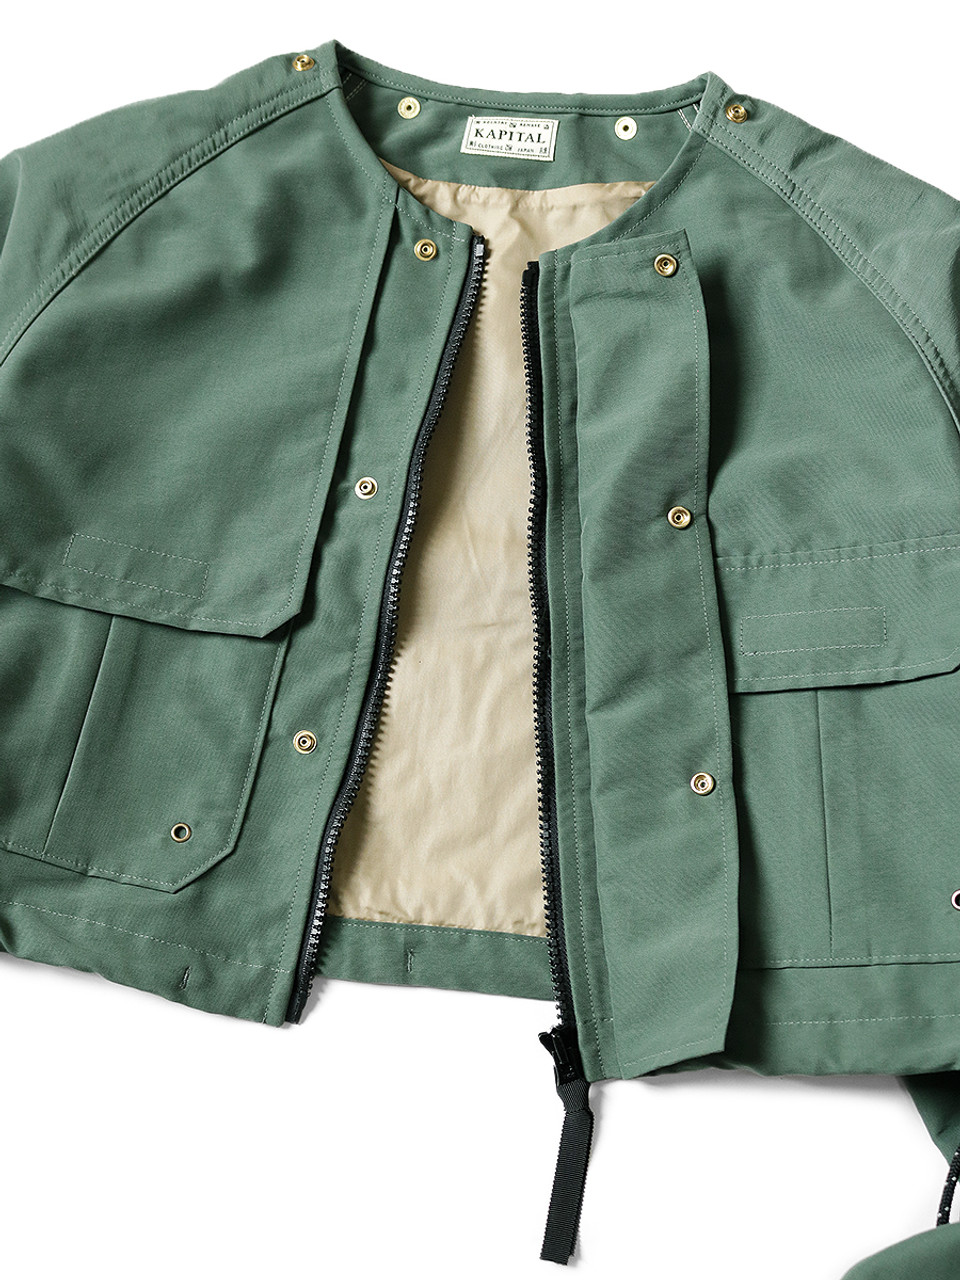 贅沢品 60's S/S値段交渉あり size 1st jacket tropical ジャケット 